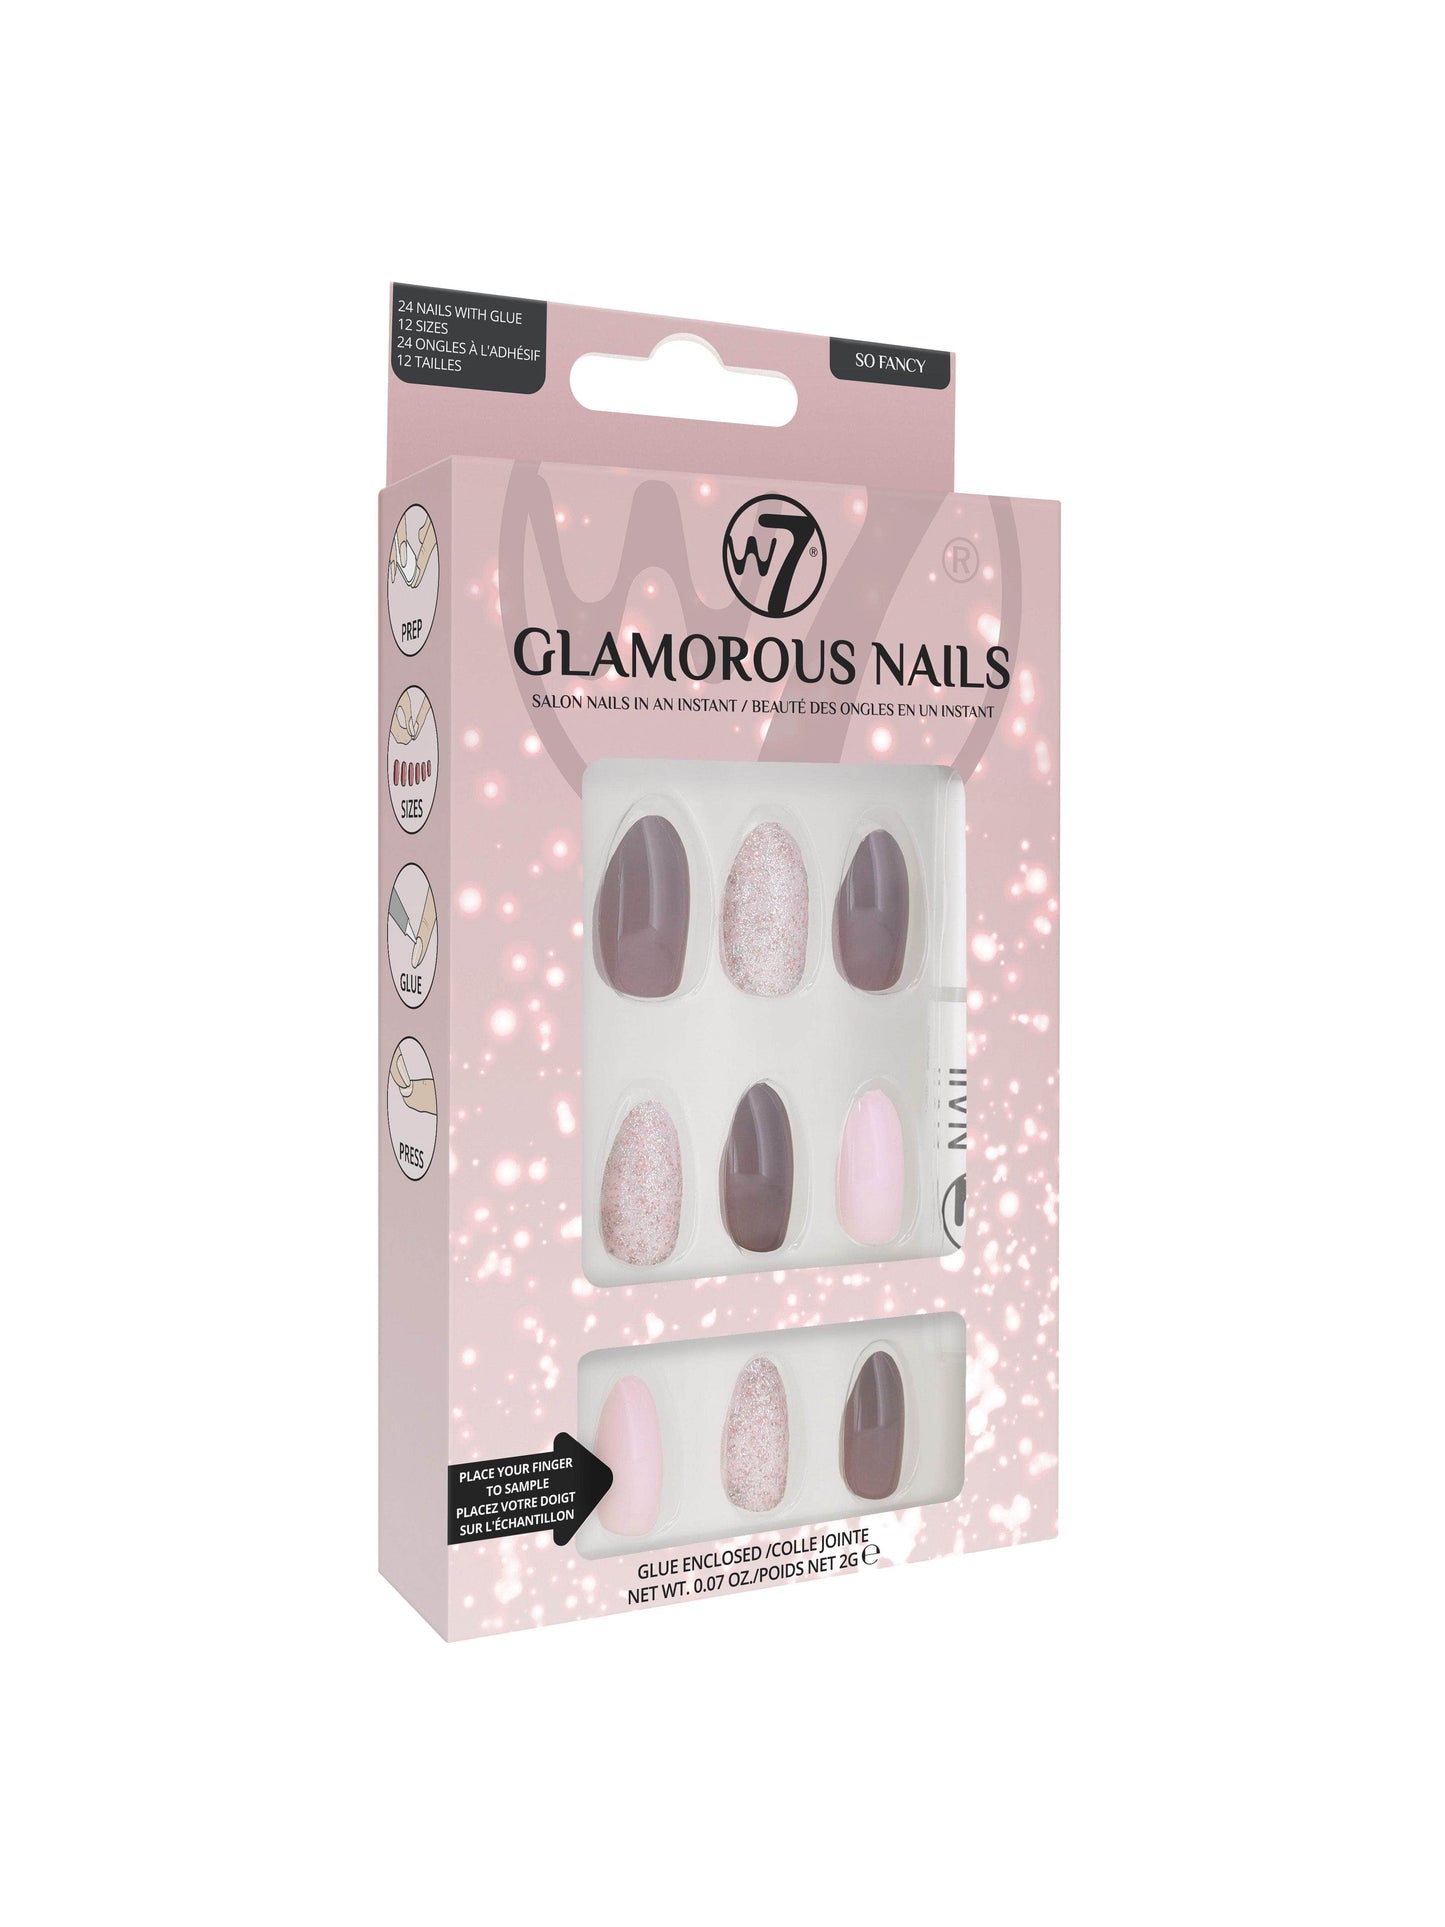 W7 Glamorous Nails So Fancy